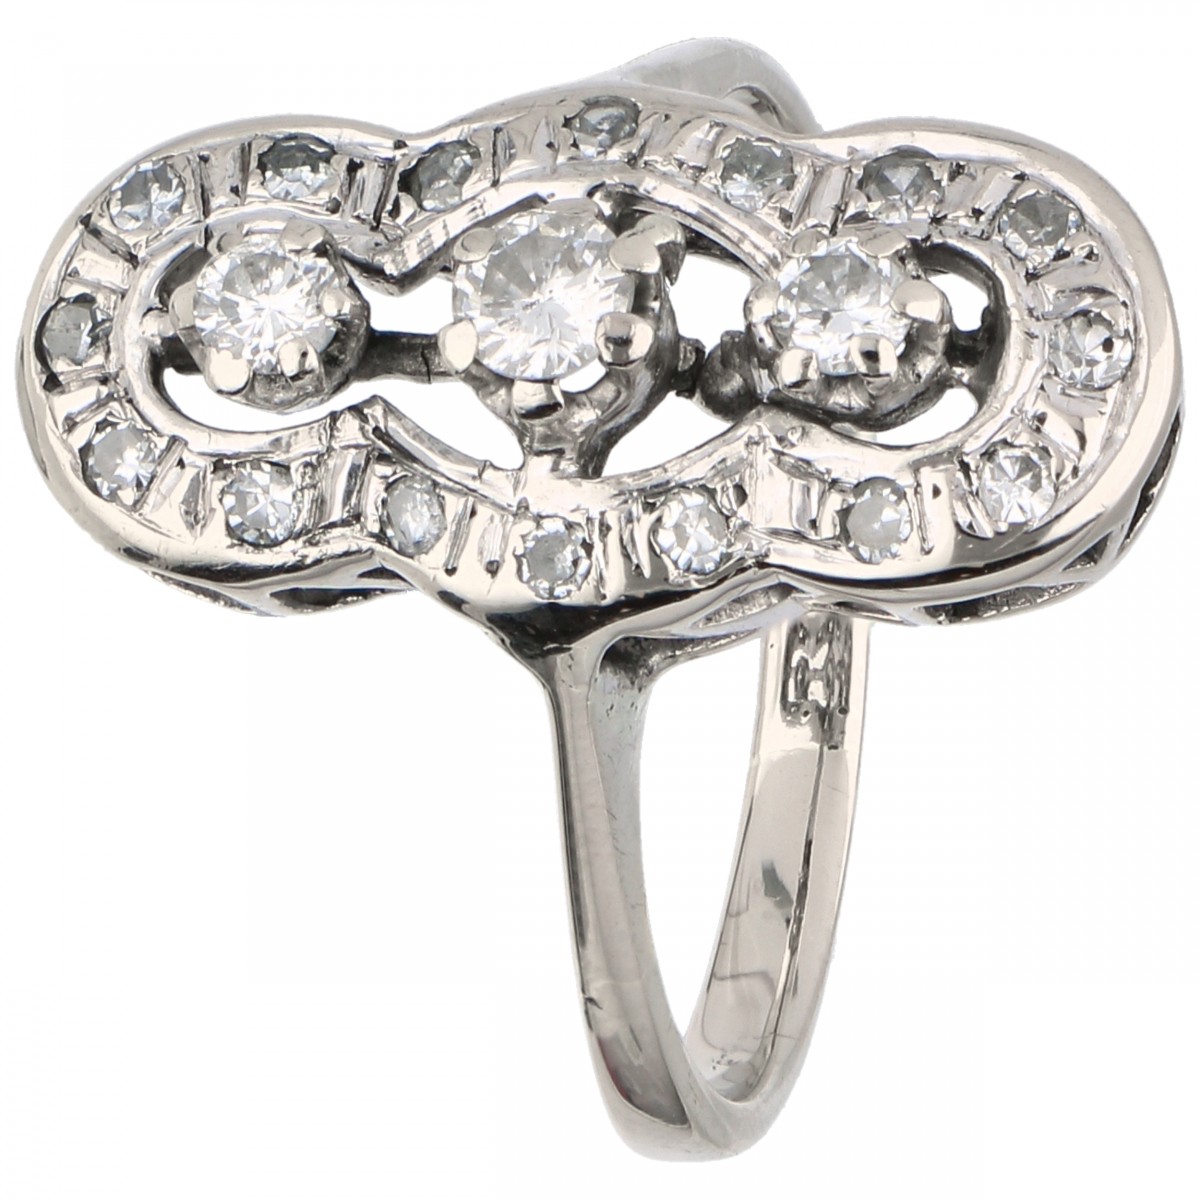 Witgouden open gewerkte prinsessen ring, met ca. 0.37 ct. diamant - 18 kt.